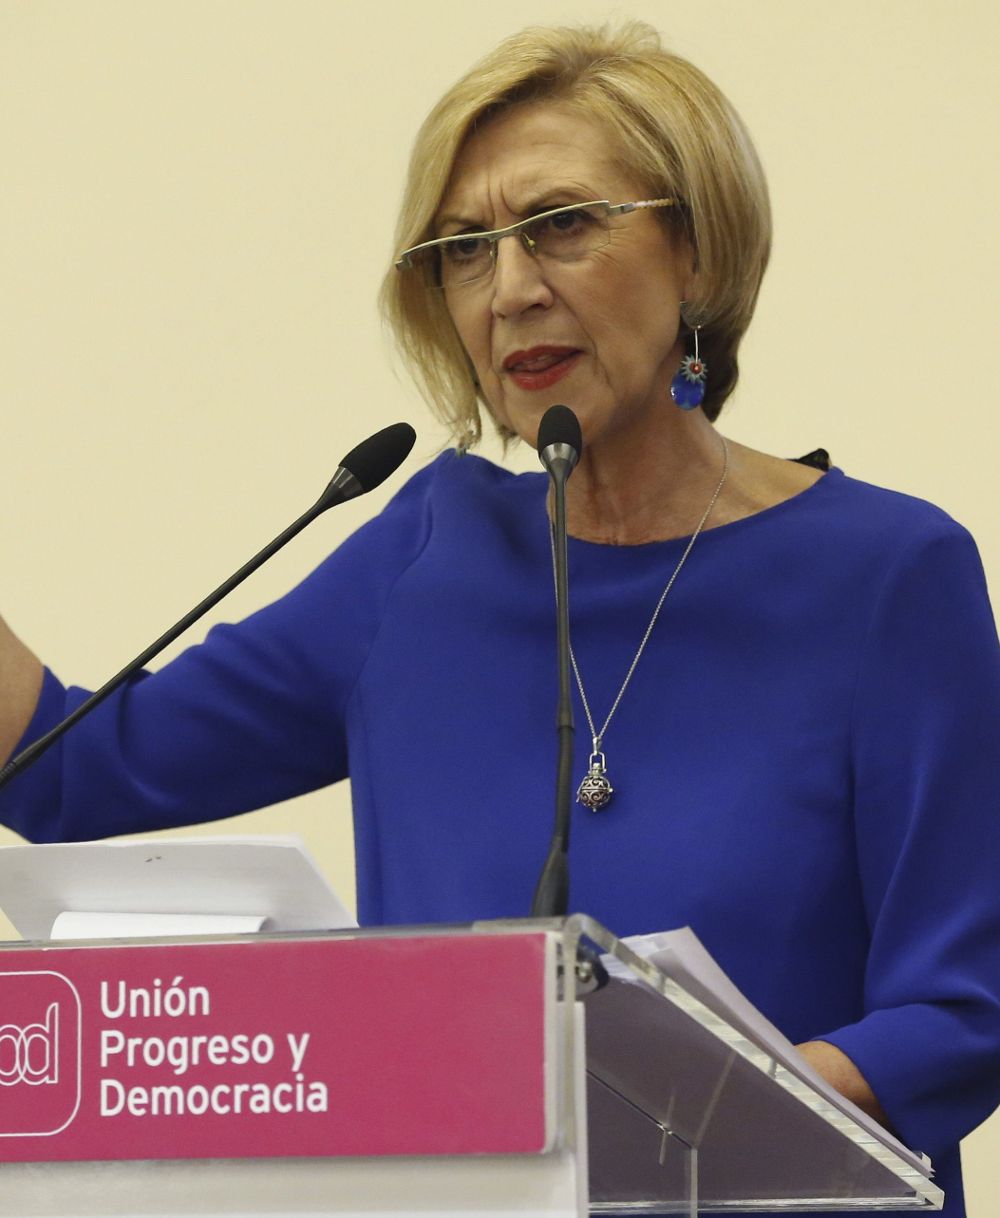 La portavoz de UPyD, Rosa Díez, durante la presentación del informe de gestión ante el Consejo Político de UPyD, hoy en Madrid.